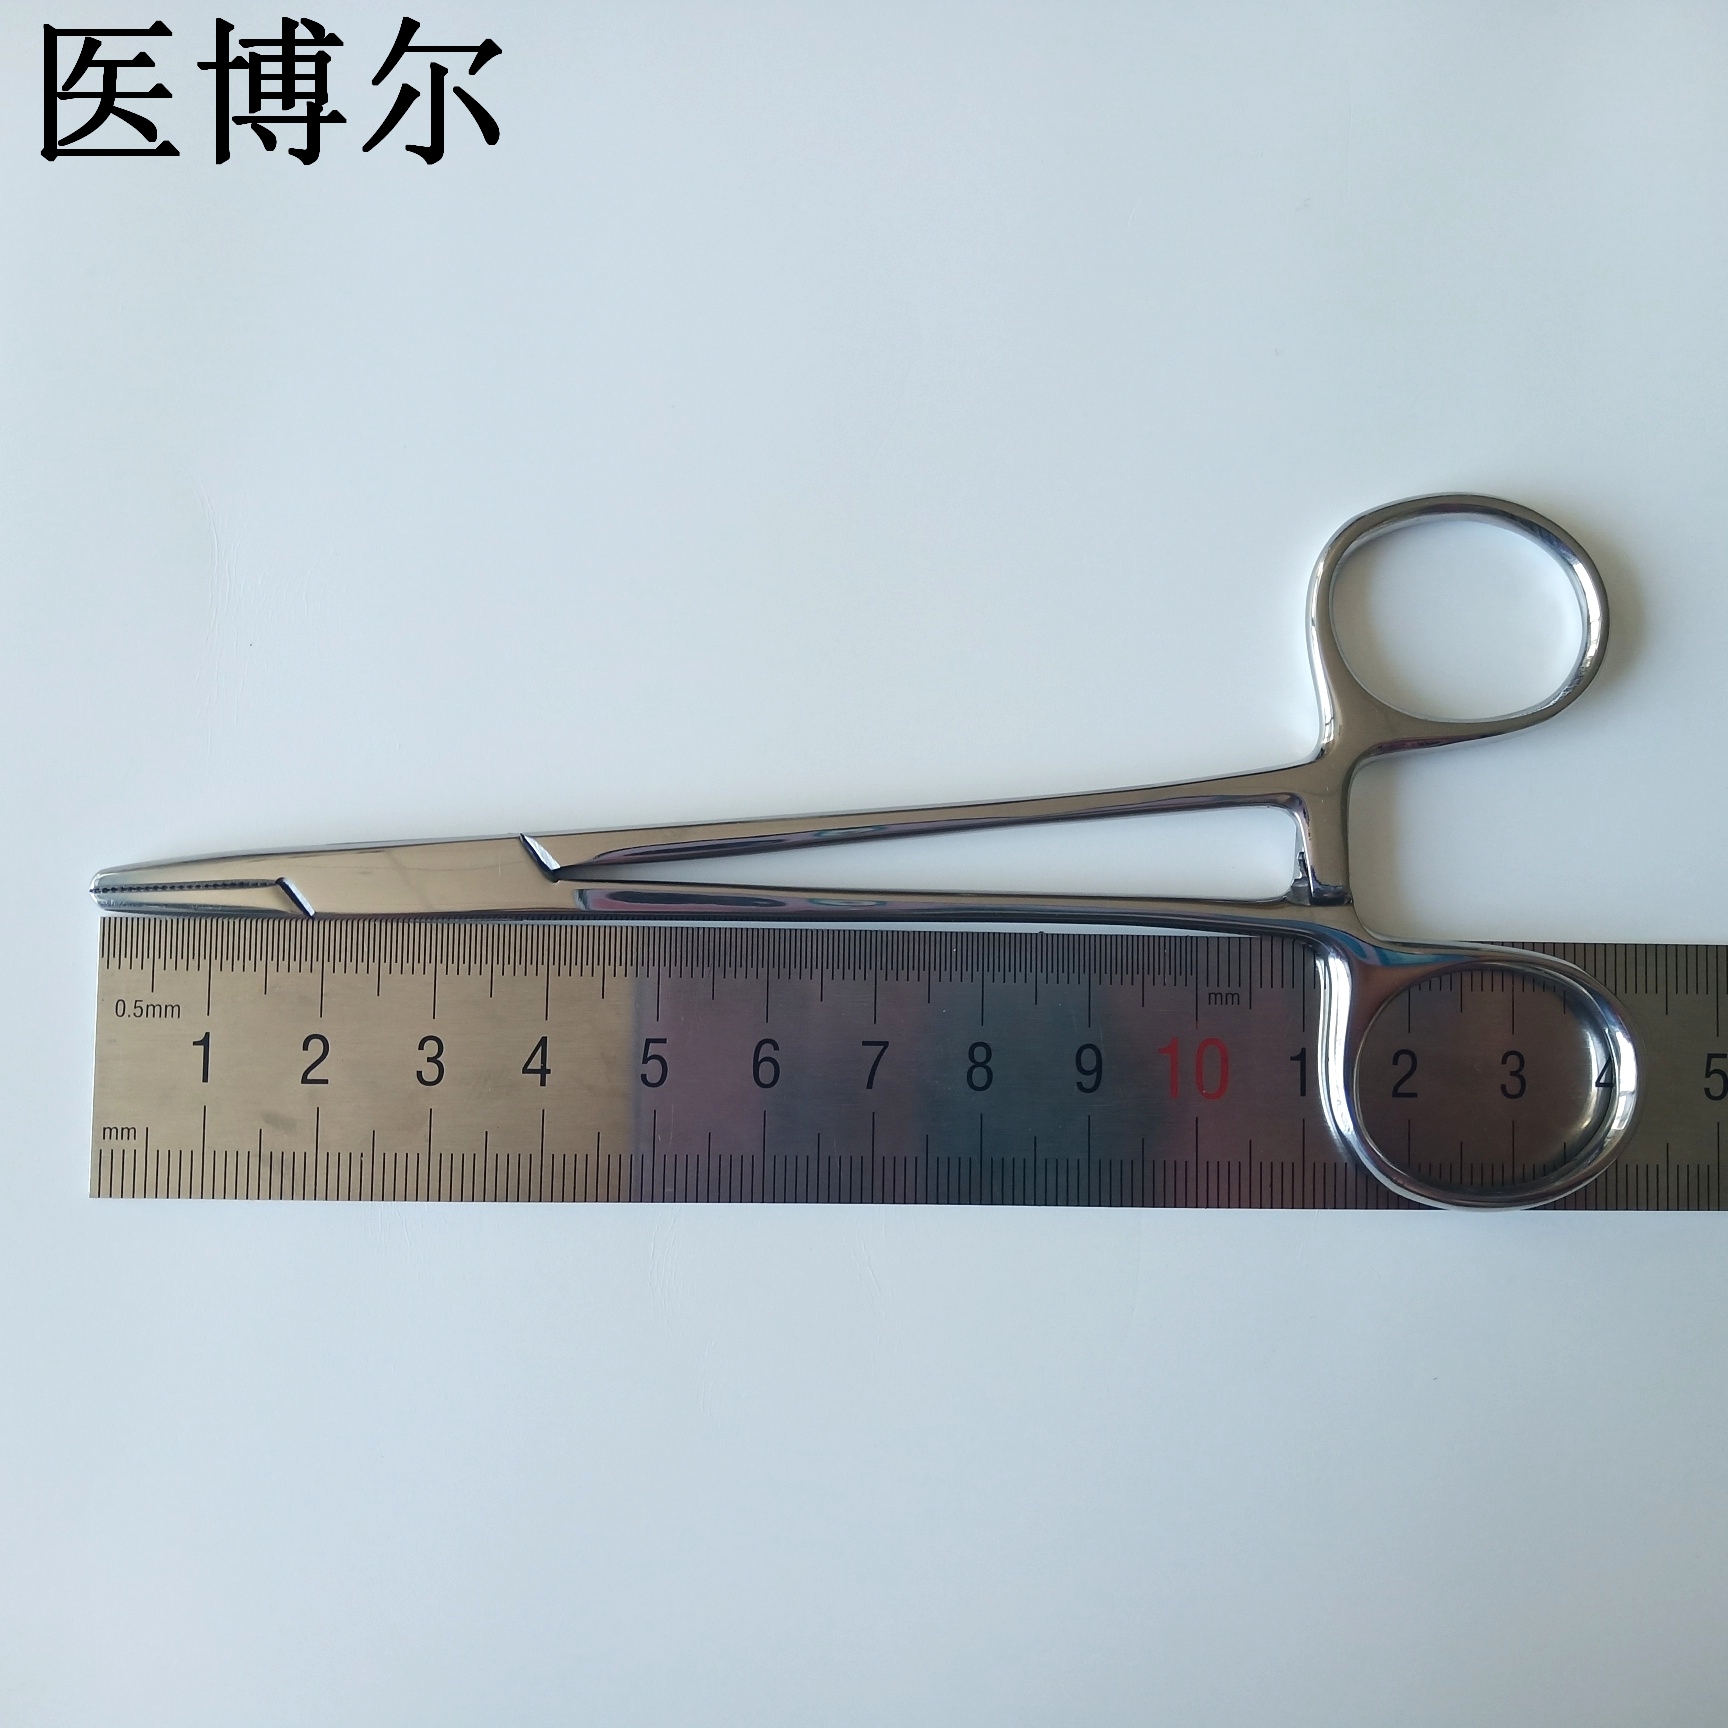 14cm粗针持针钳 (9)_看图王.jpg